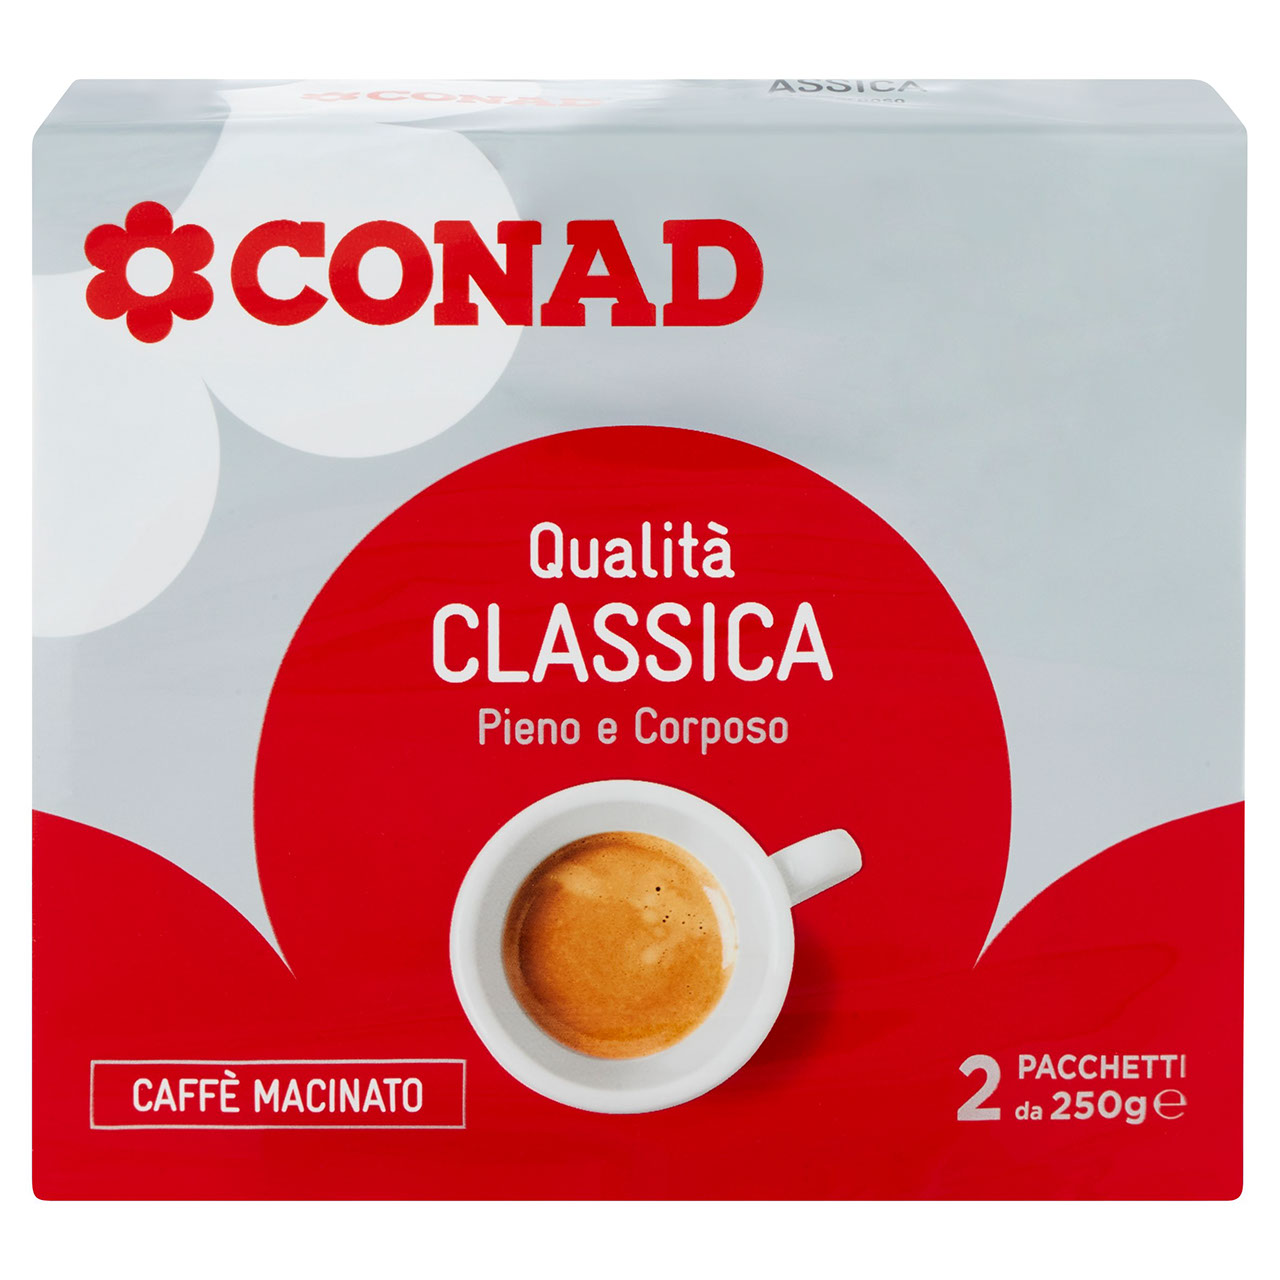 Caffè Macinato Qualità Classica 2 x 250 g Conad | Conad